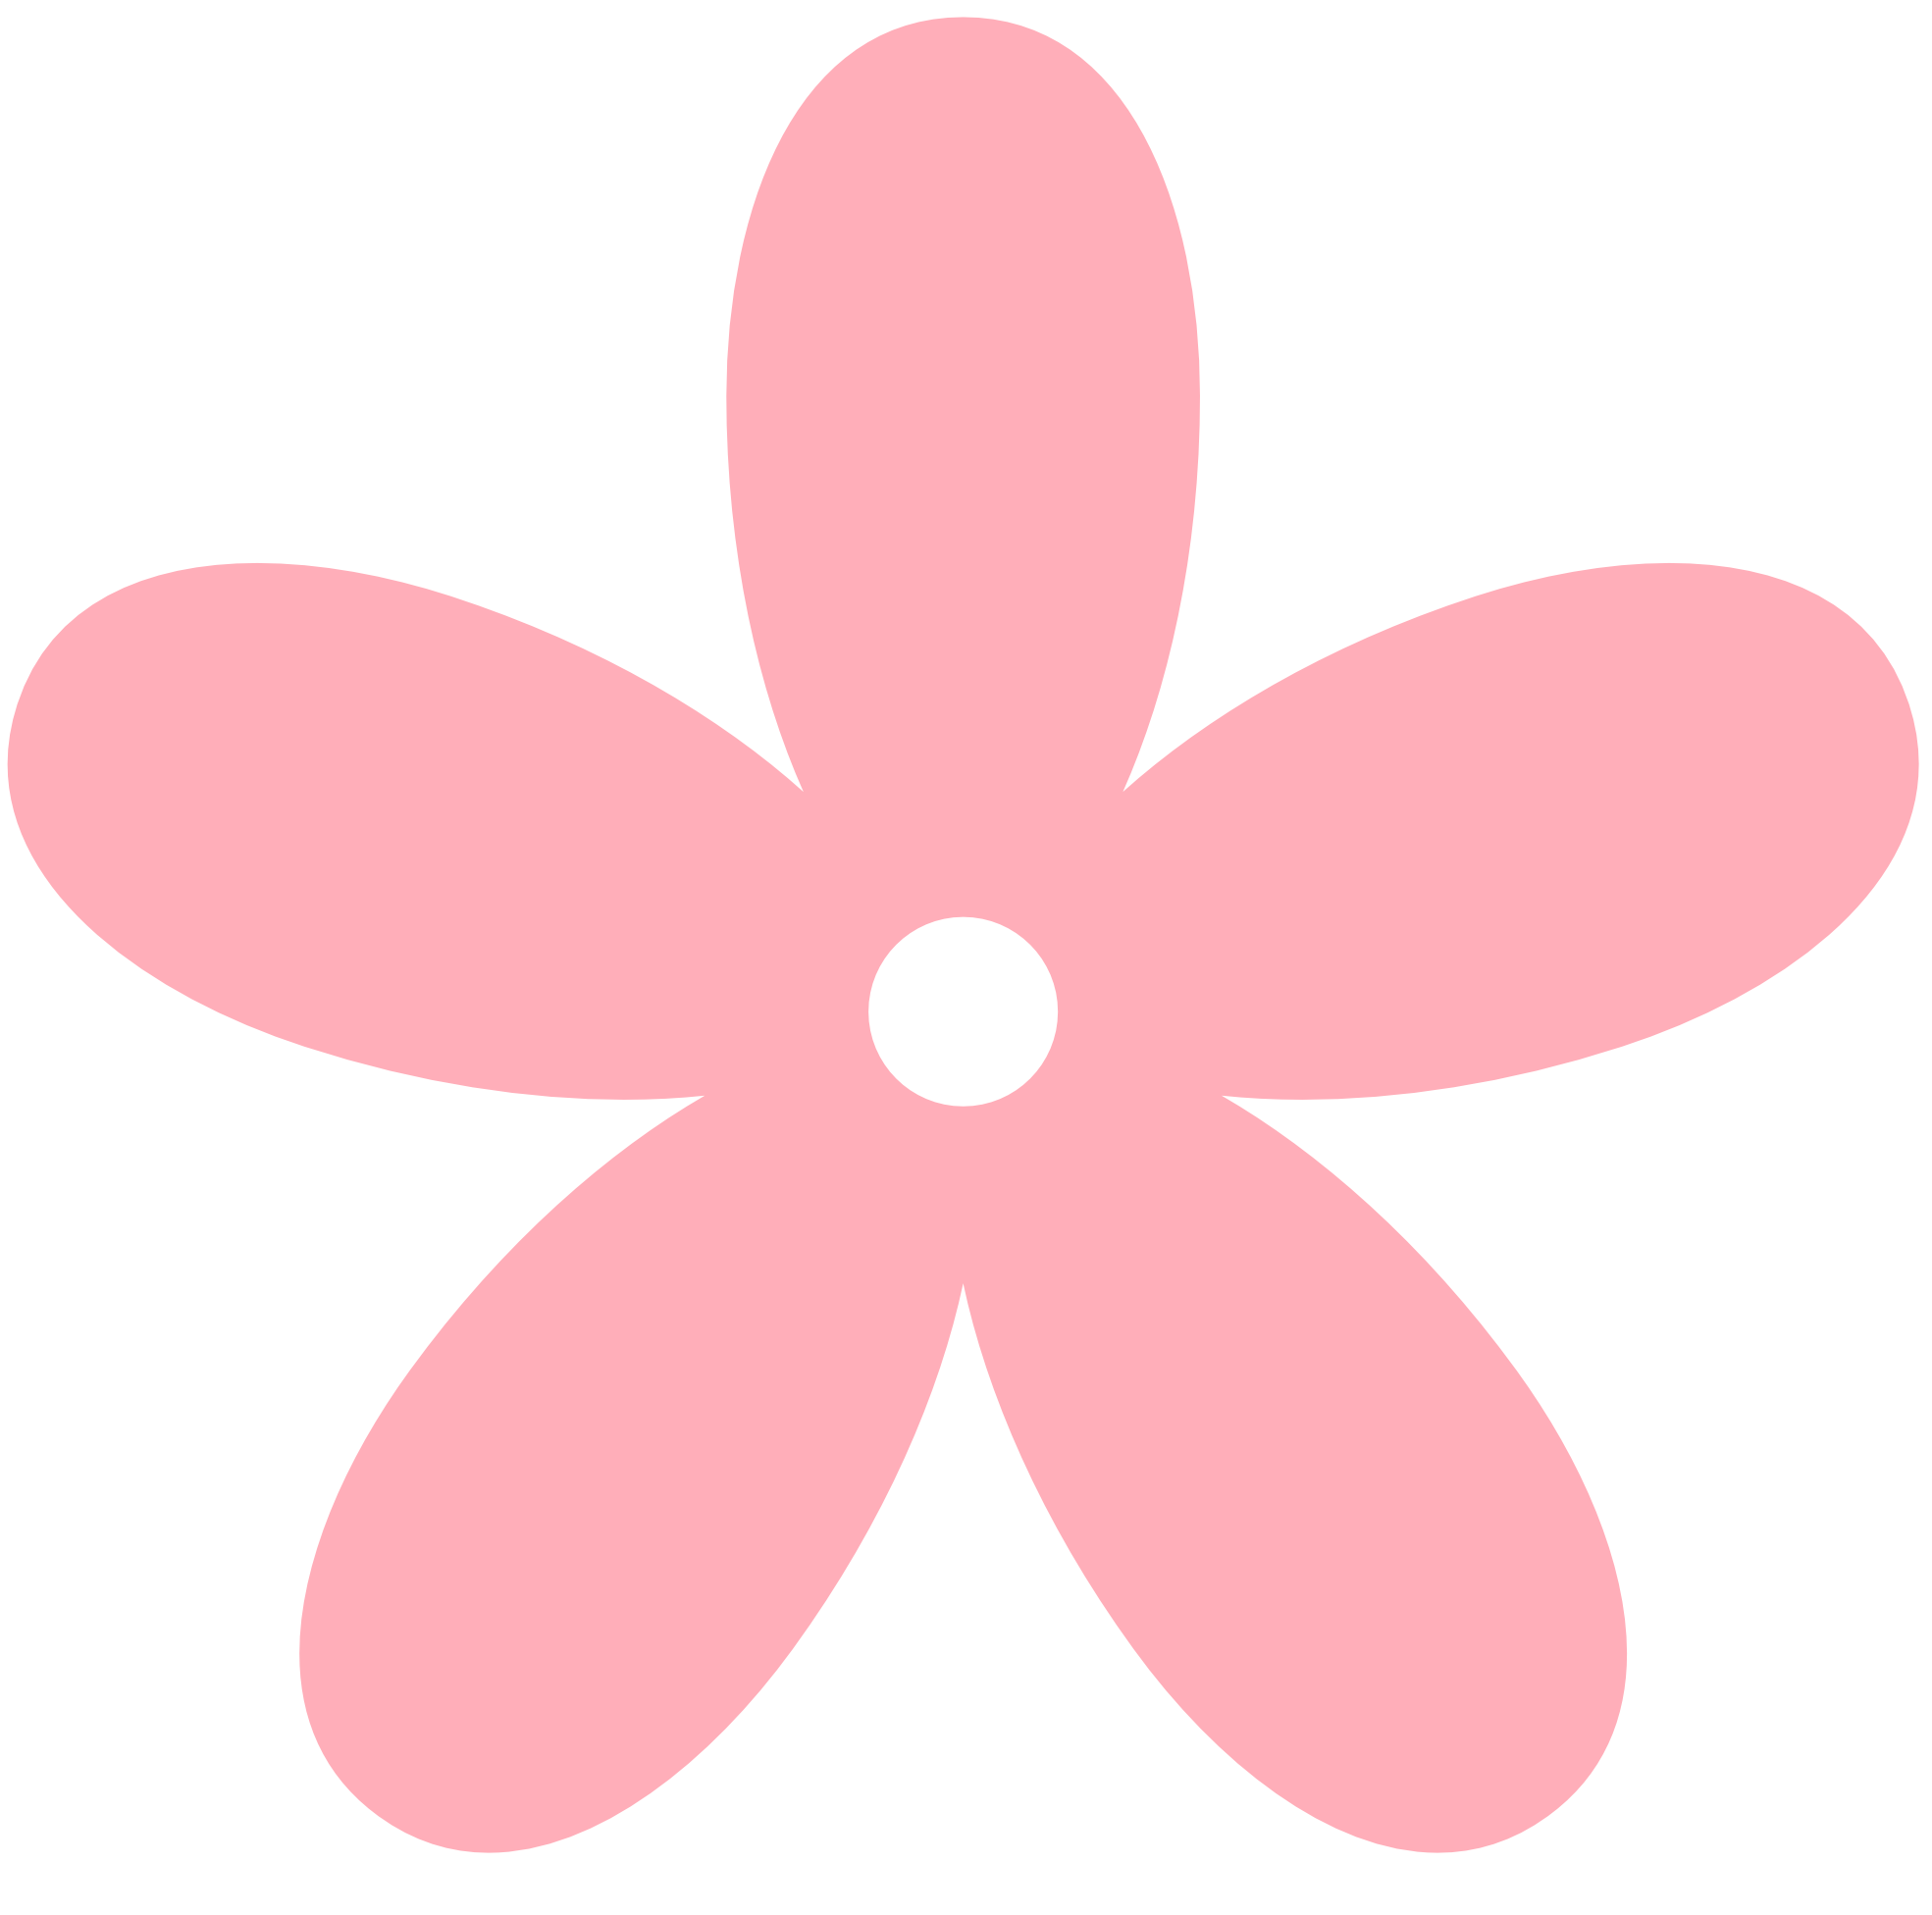 Flower clipart cute. Light pink 